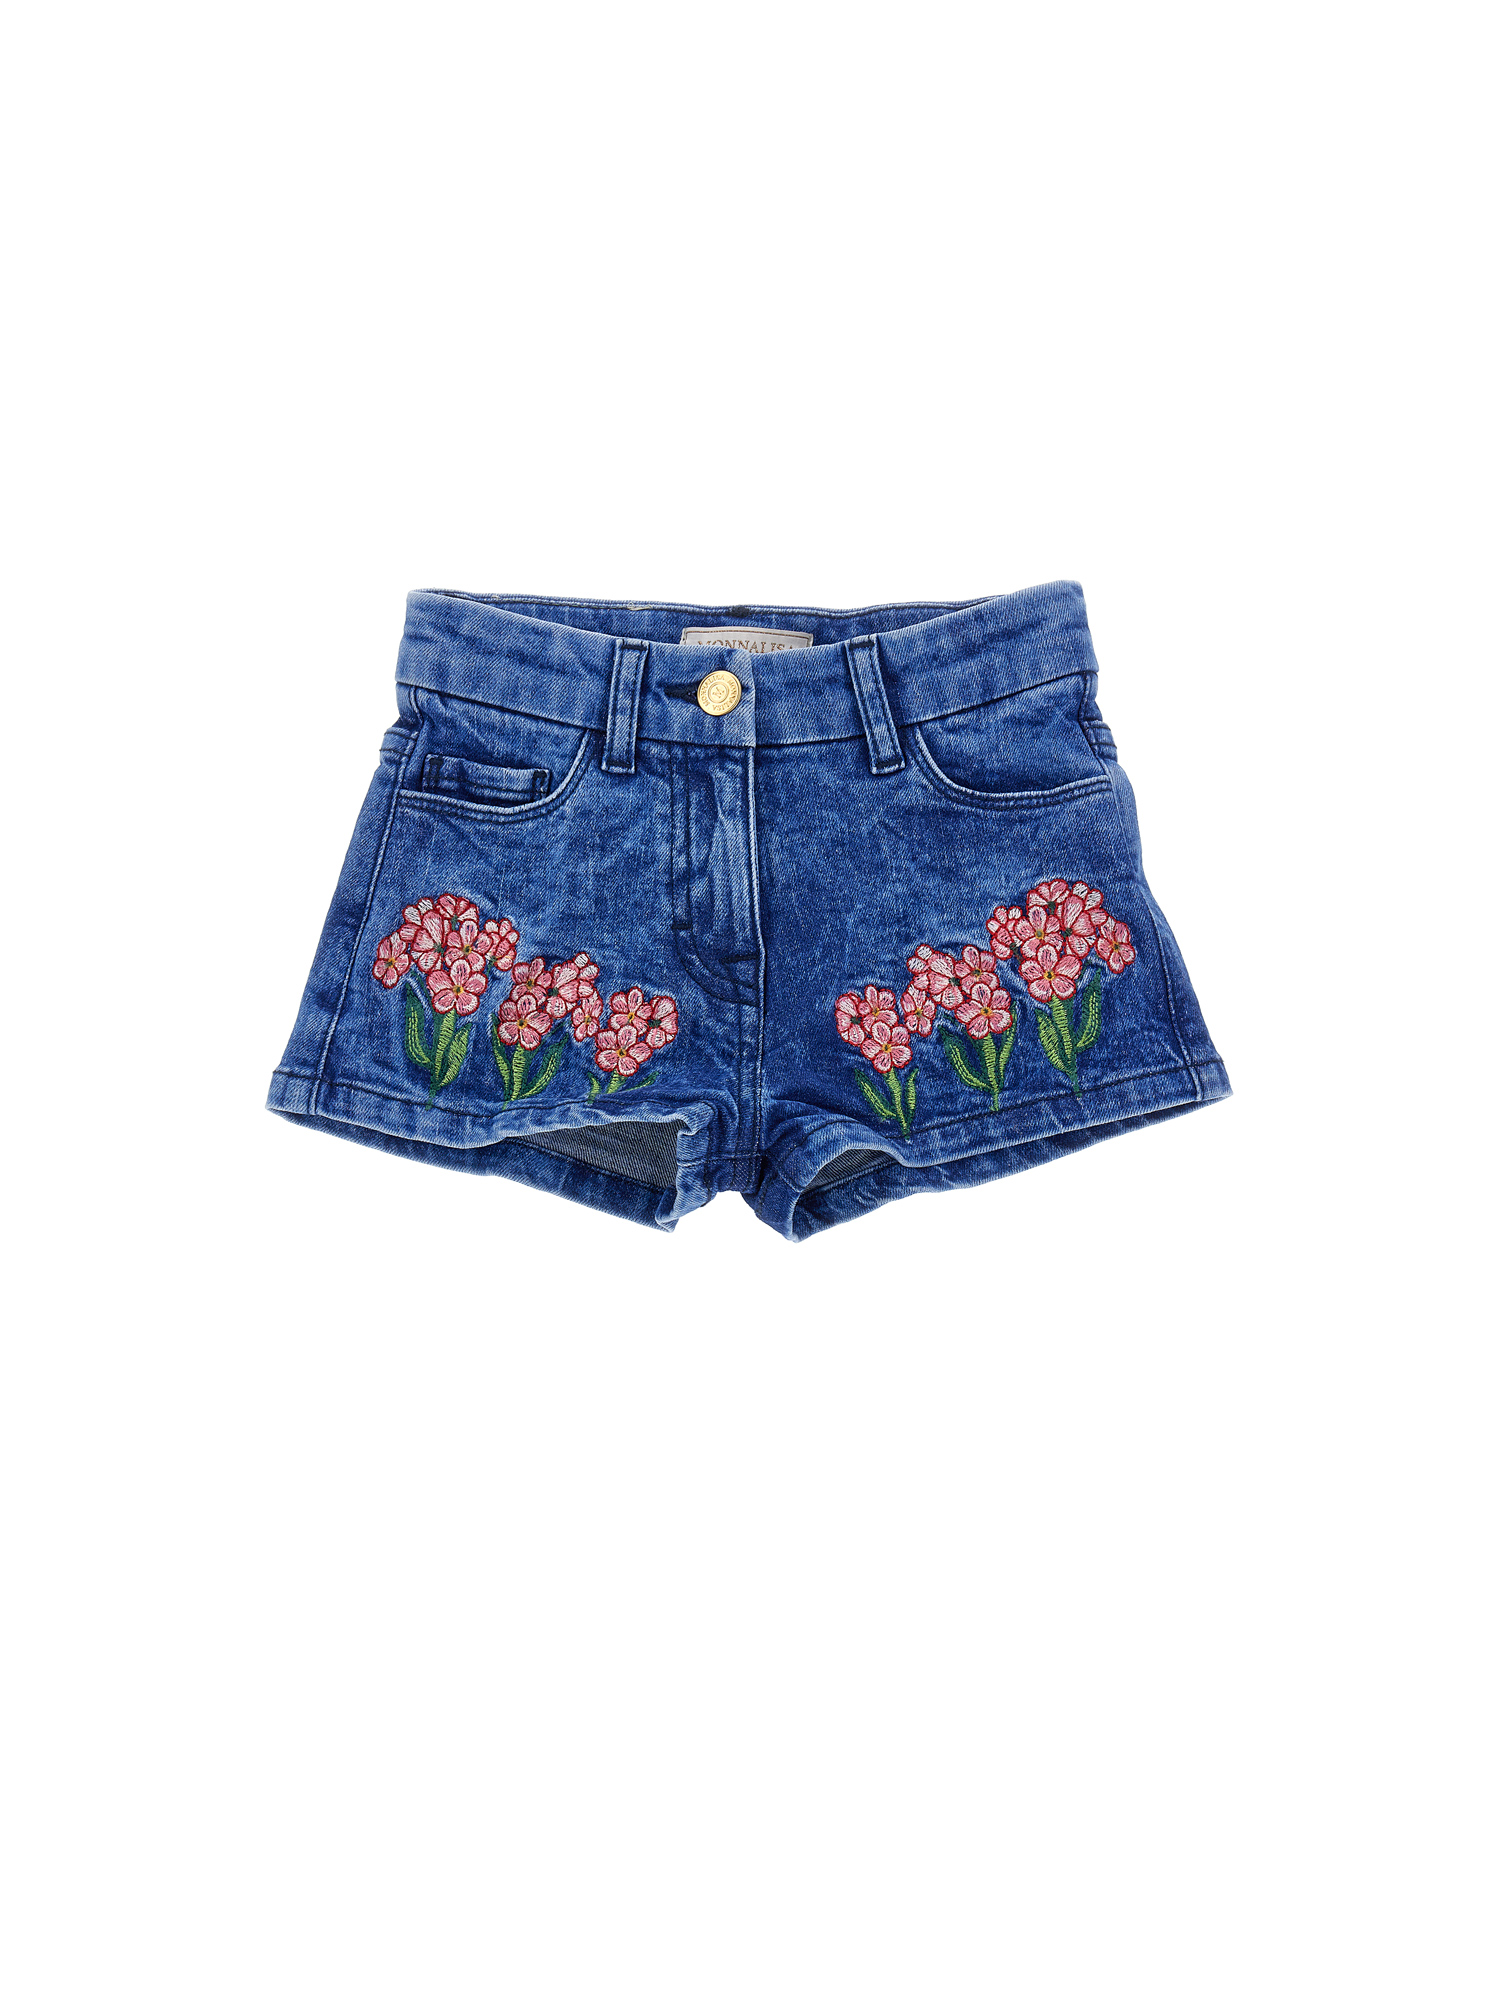 Monnalisa Embroidered Denim Shorts In Denim Blue + Pink